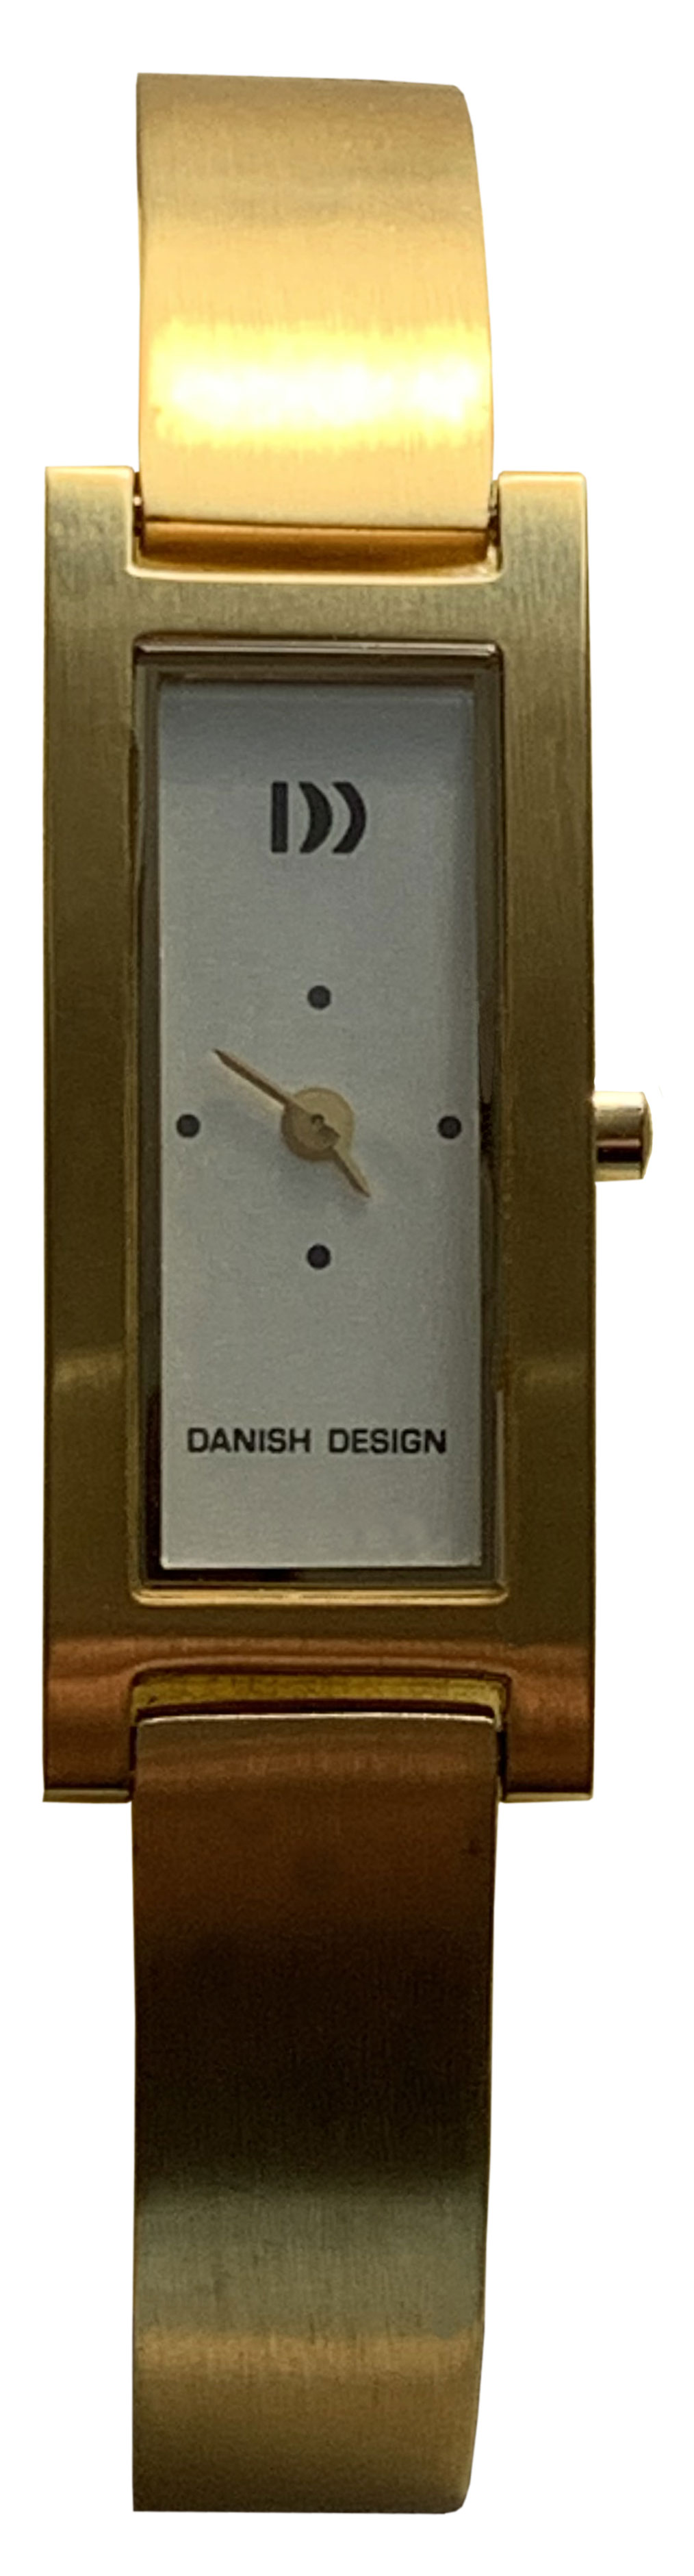 Фото часов Danish Design IV66Q511 SM WH MAT